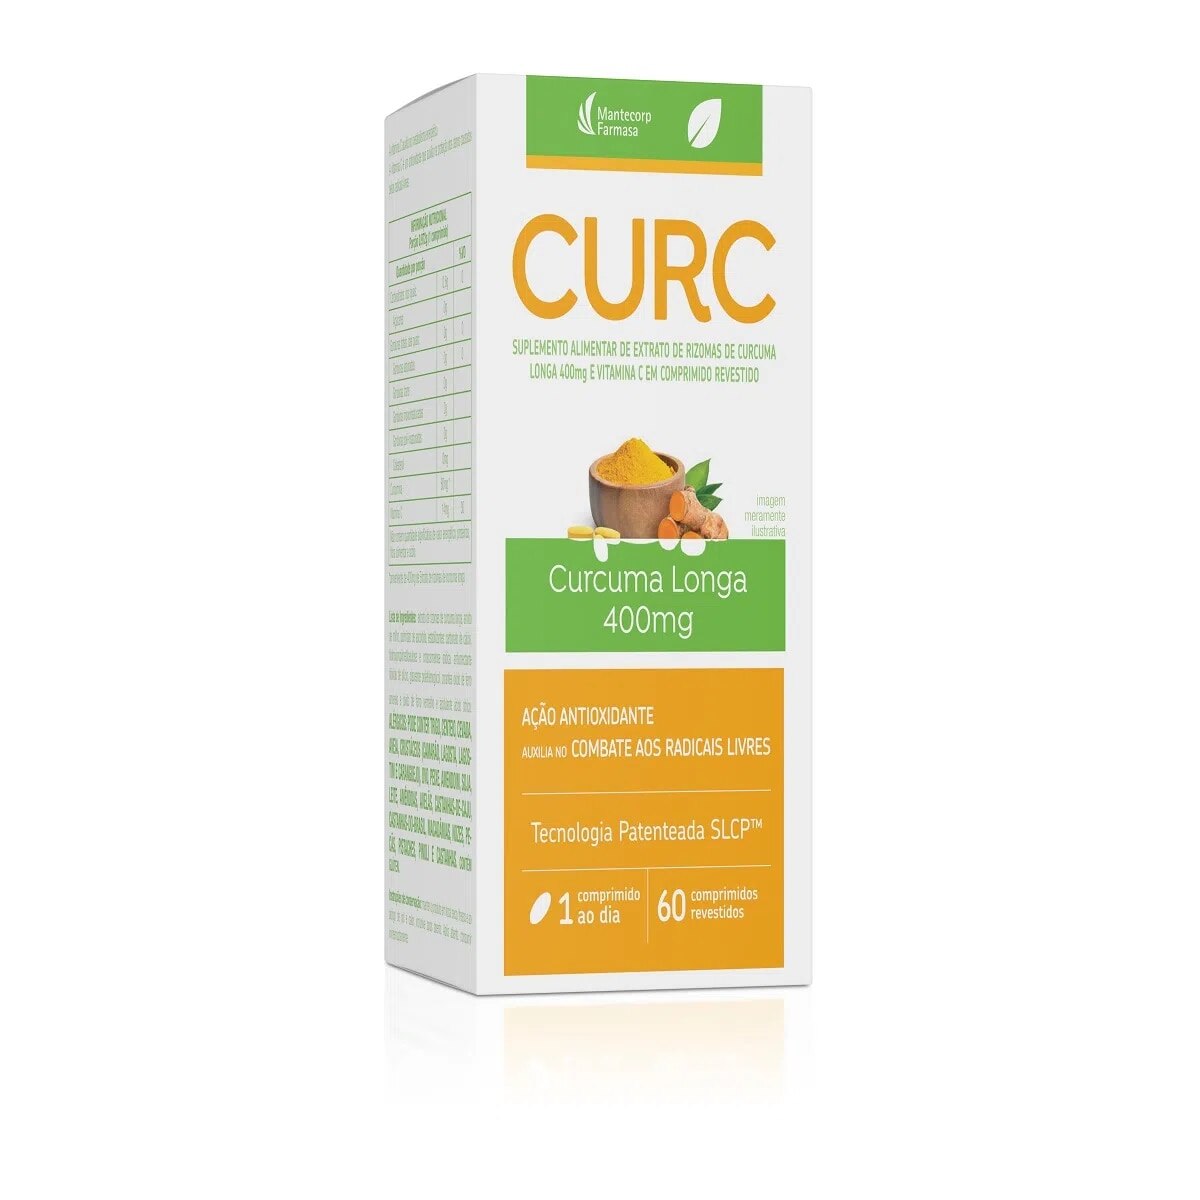 Curc Curcuma Longa 400mg 60 Comprimidos Revestidos